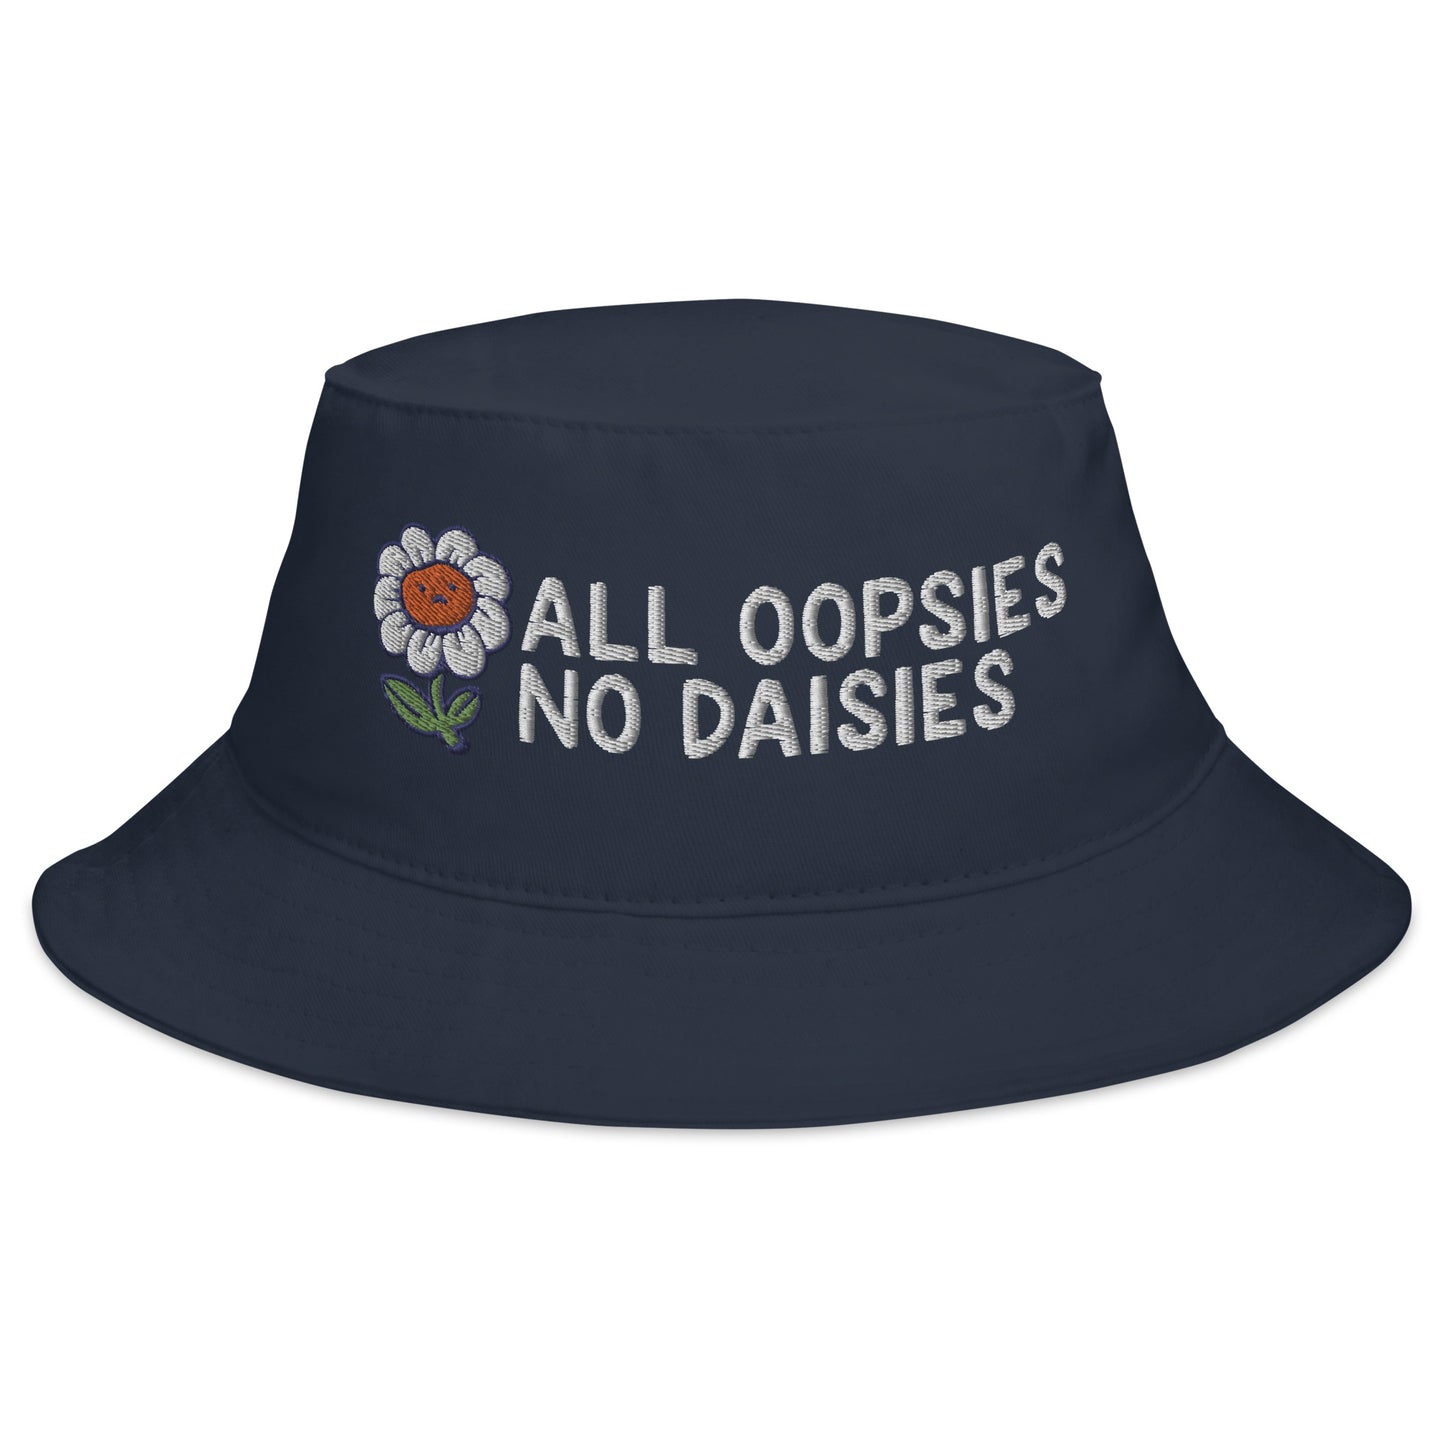 All Oopsies No Daisies Bucket Hat